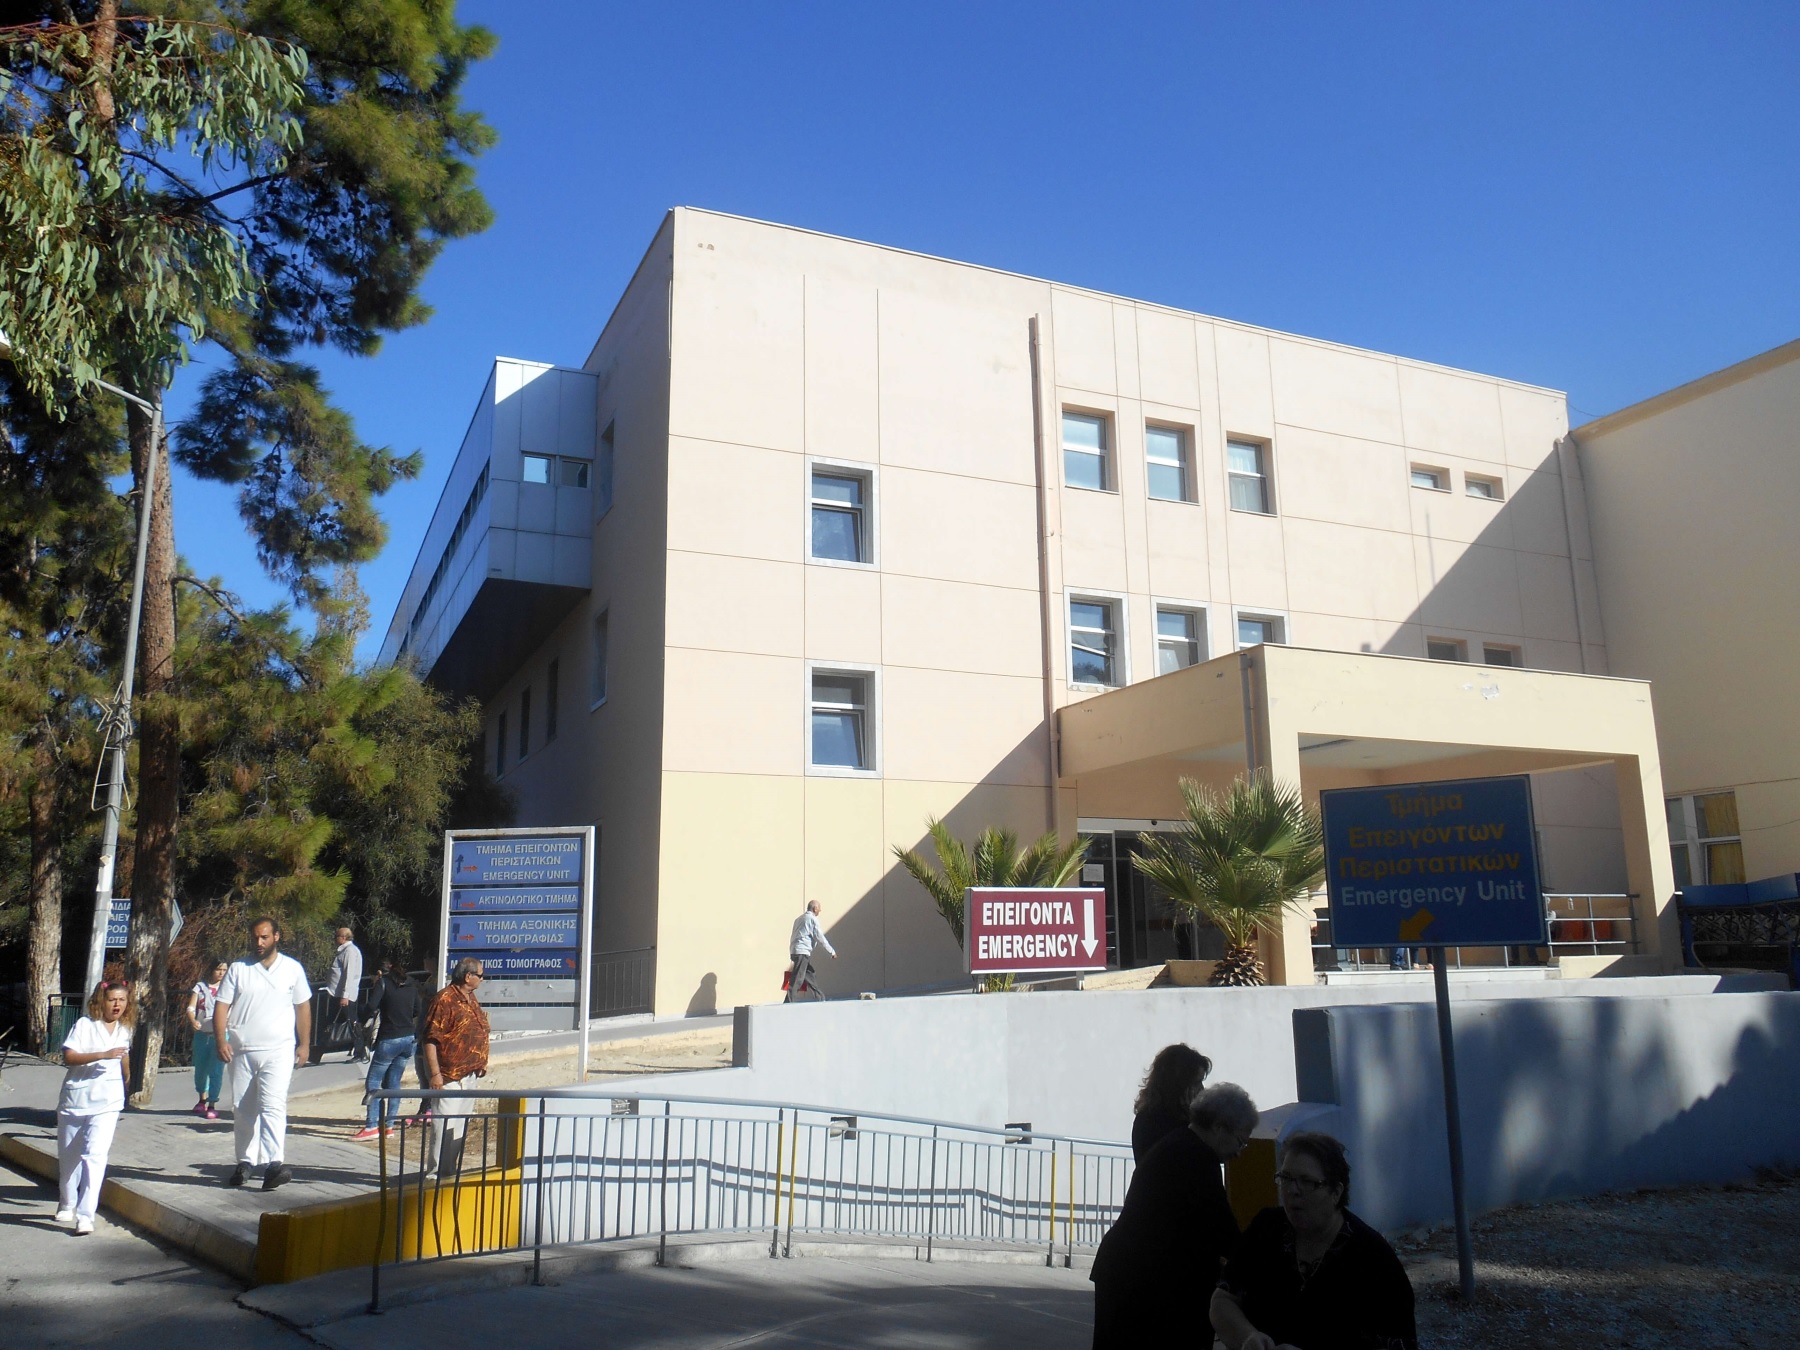 Ο Χρυσοχοΐδης ξήλωσε τη διοίκηση του “Βενιζέλειου” Νοσοκομείου